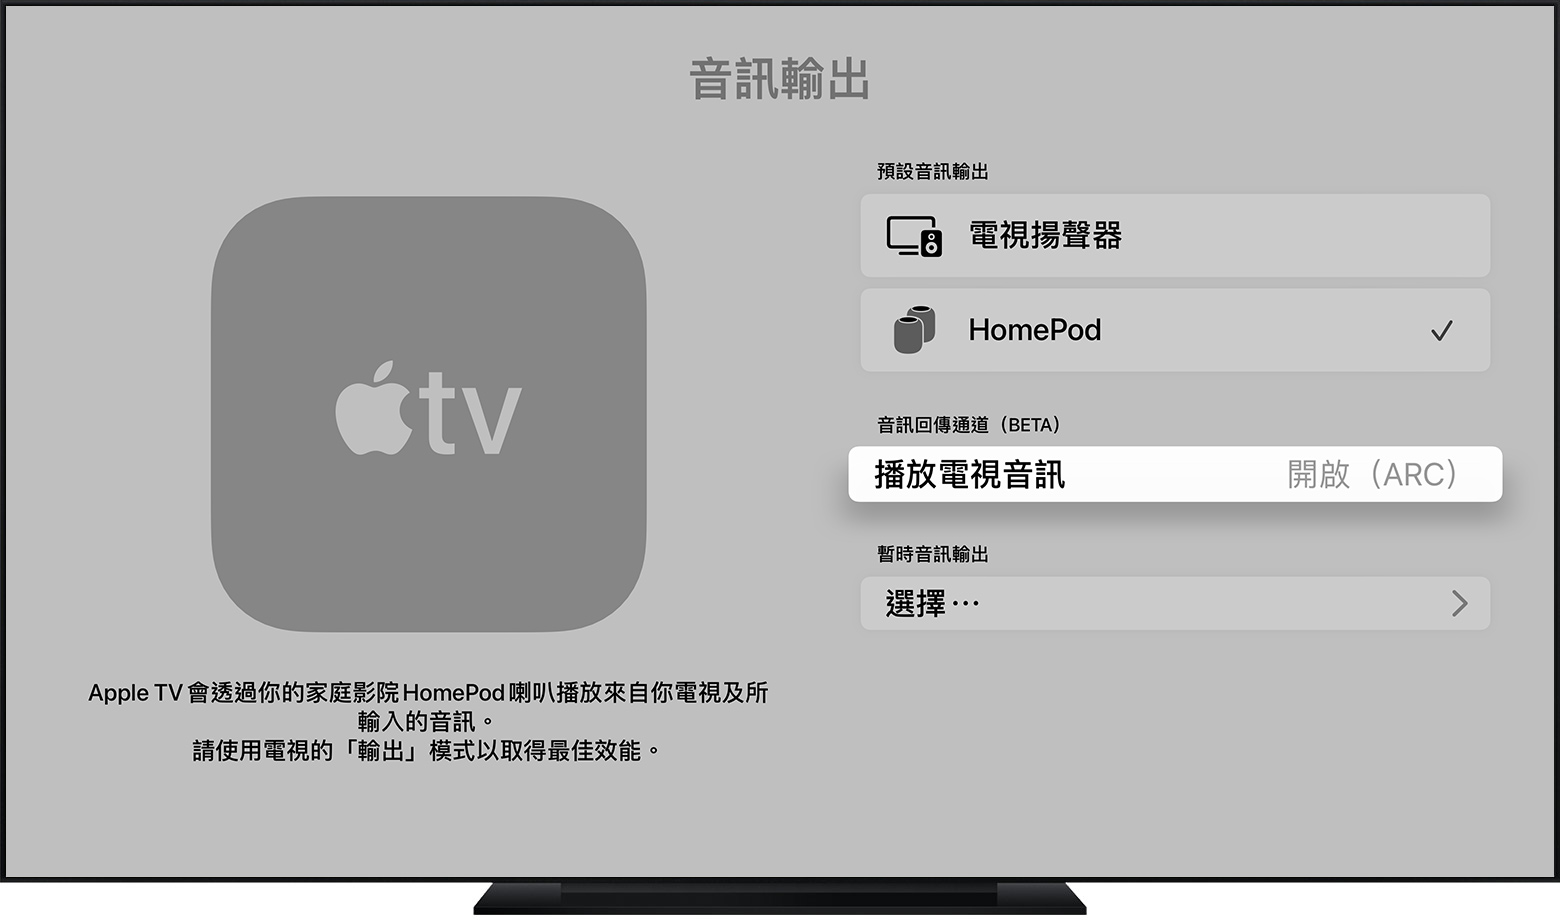 配搭使用Apple TV 4K (第2 代) 和HDMI ARC 或eARC - Apple 支援(香港)